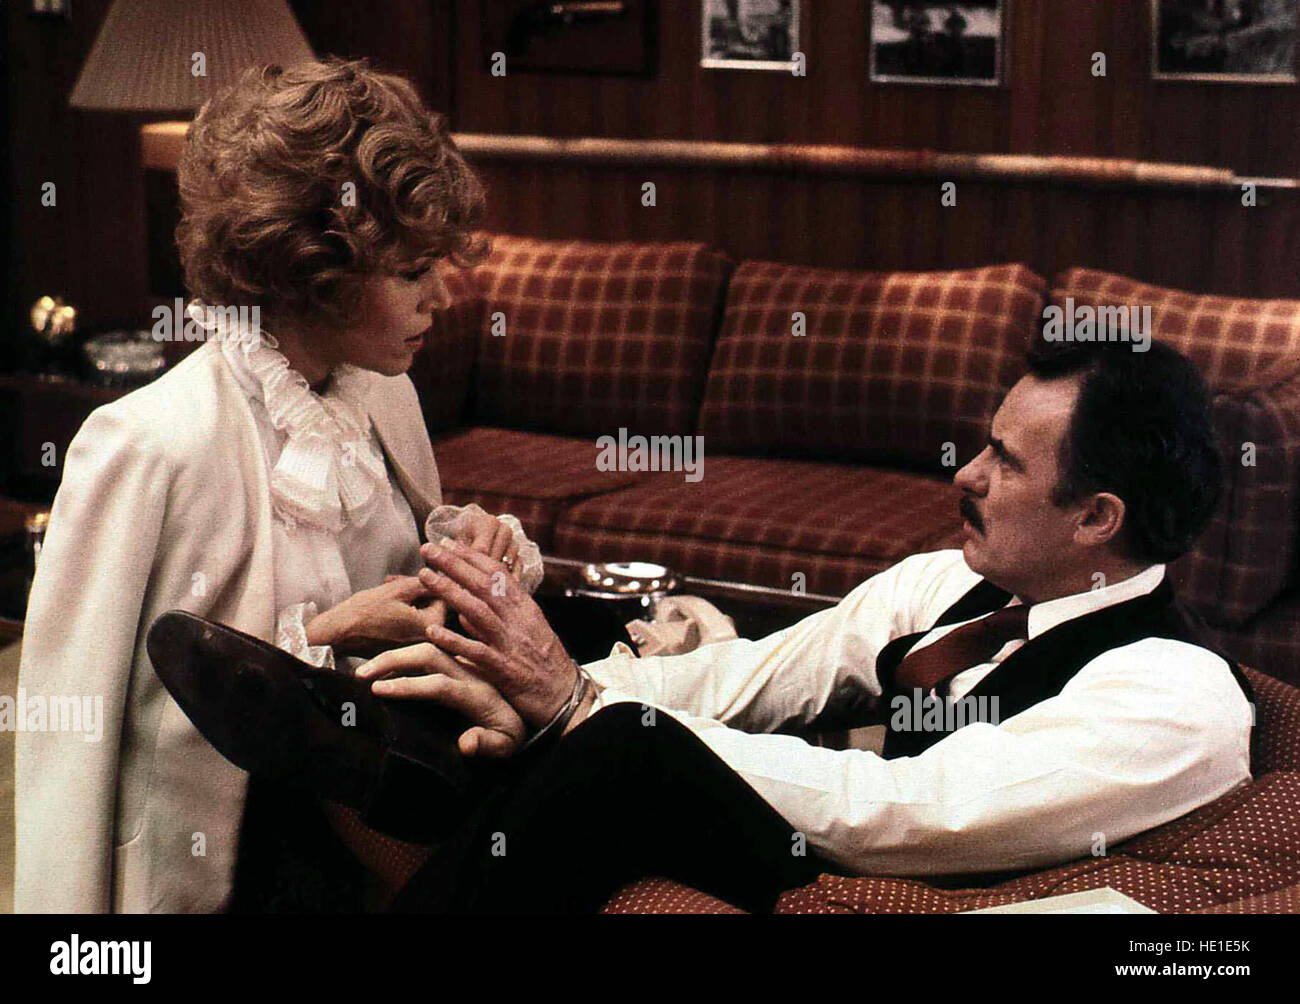 Warum eigentlich... bringen wir den Chef nicht um? aka. Nine to Five, USA 1980 Director: Colin Higgins Actors/Stars: Jane Fonda, Lily Tomlin, Dolly Parton Stock Photo